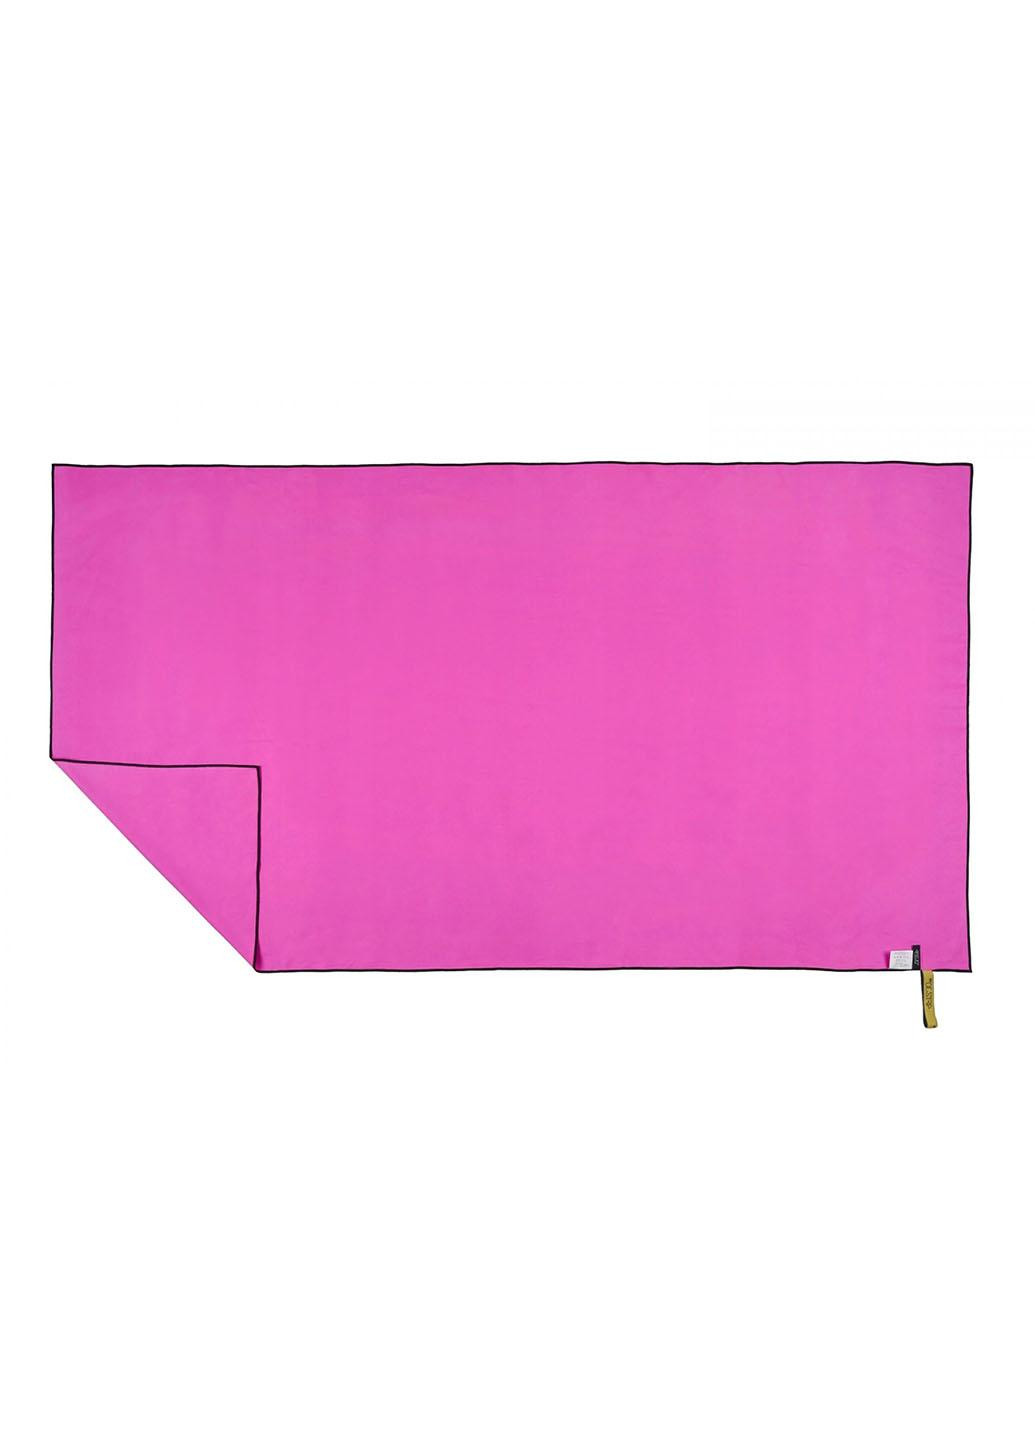 4FIZJO полотенце спортивное xl 180 x 100 см из микрофибры 4fj0433 pink розовый производство -